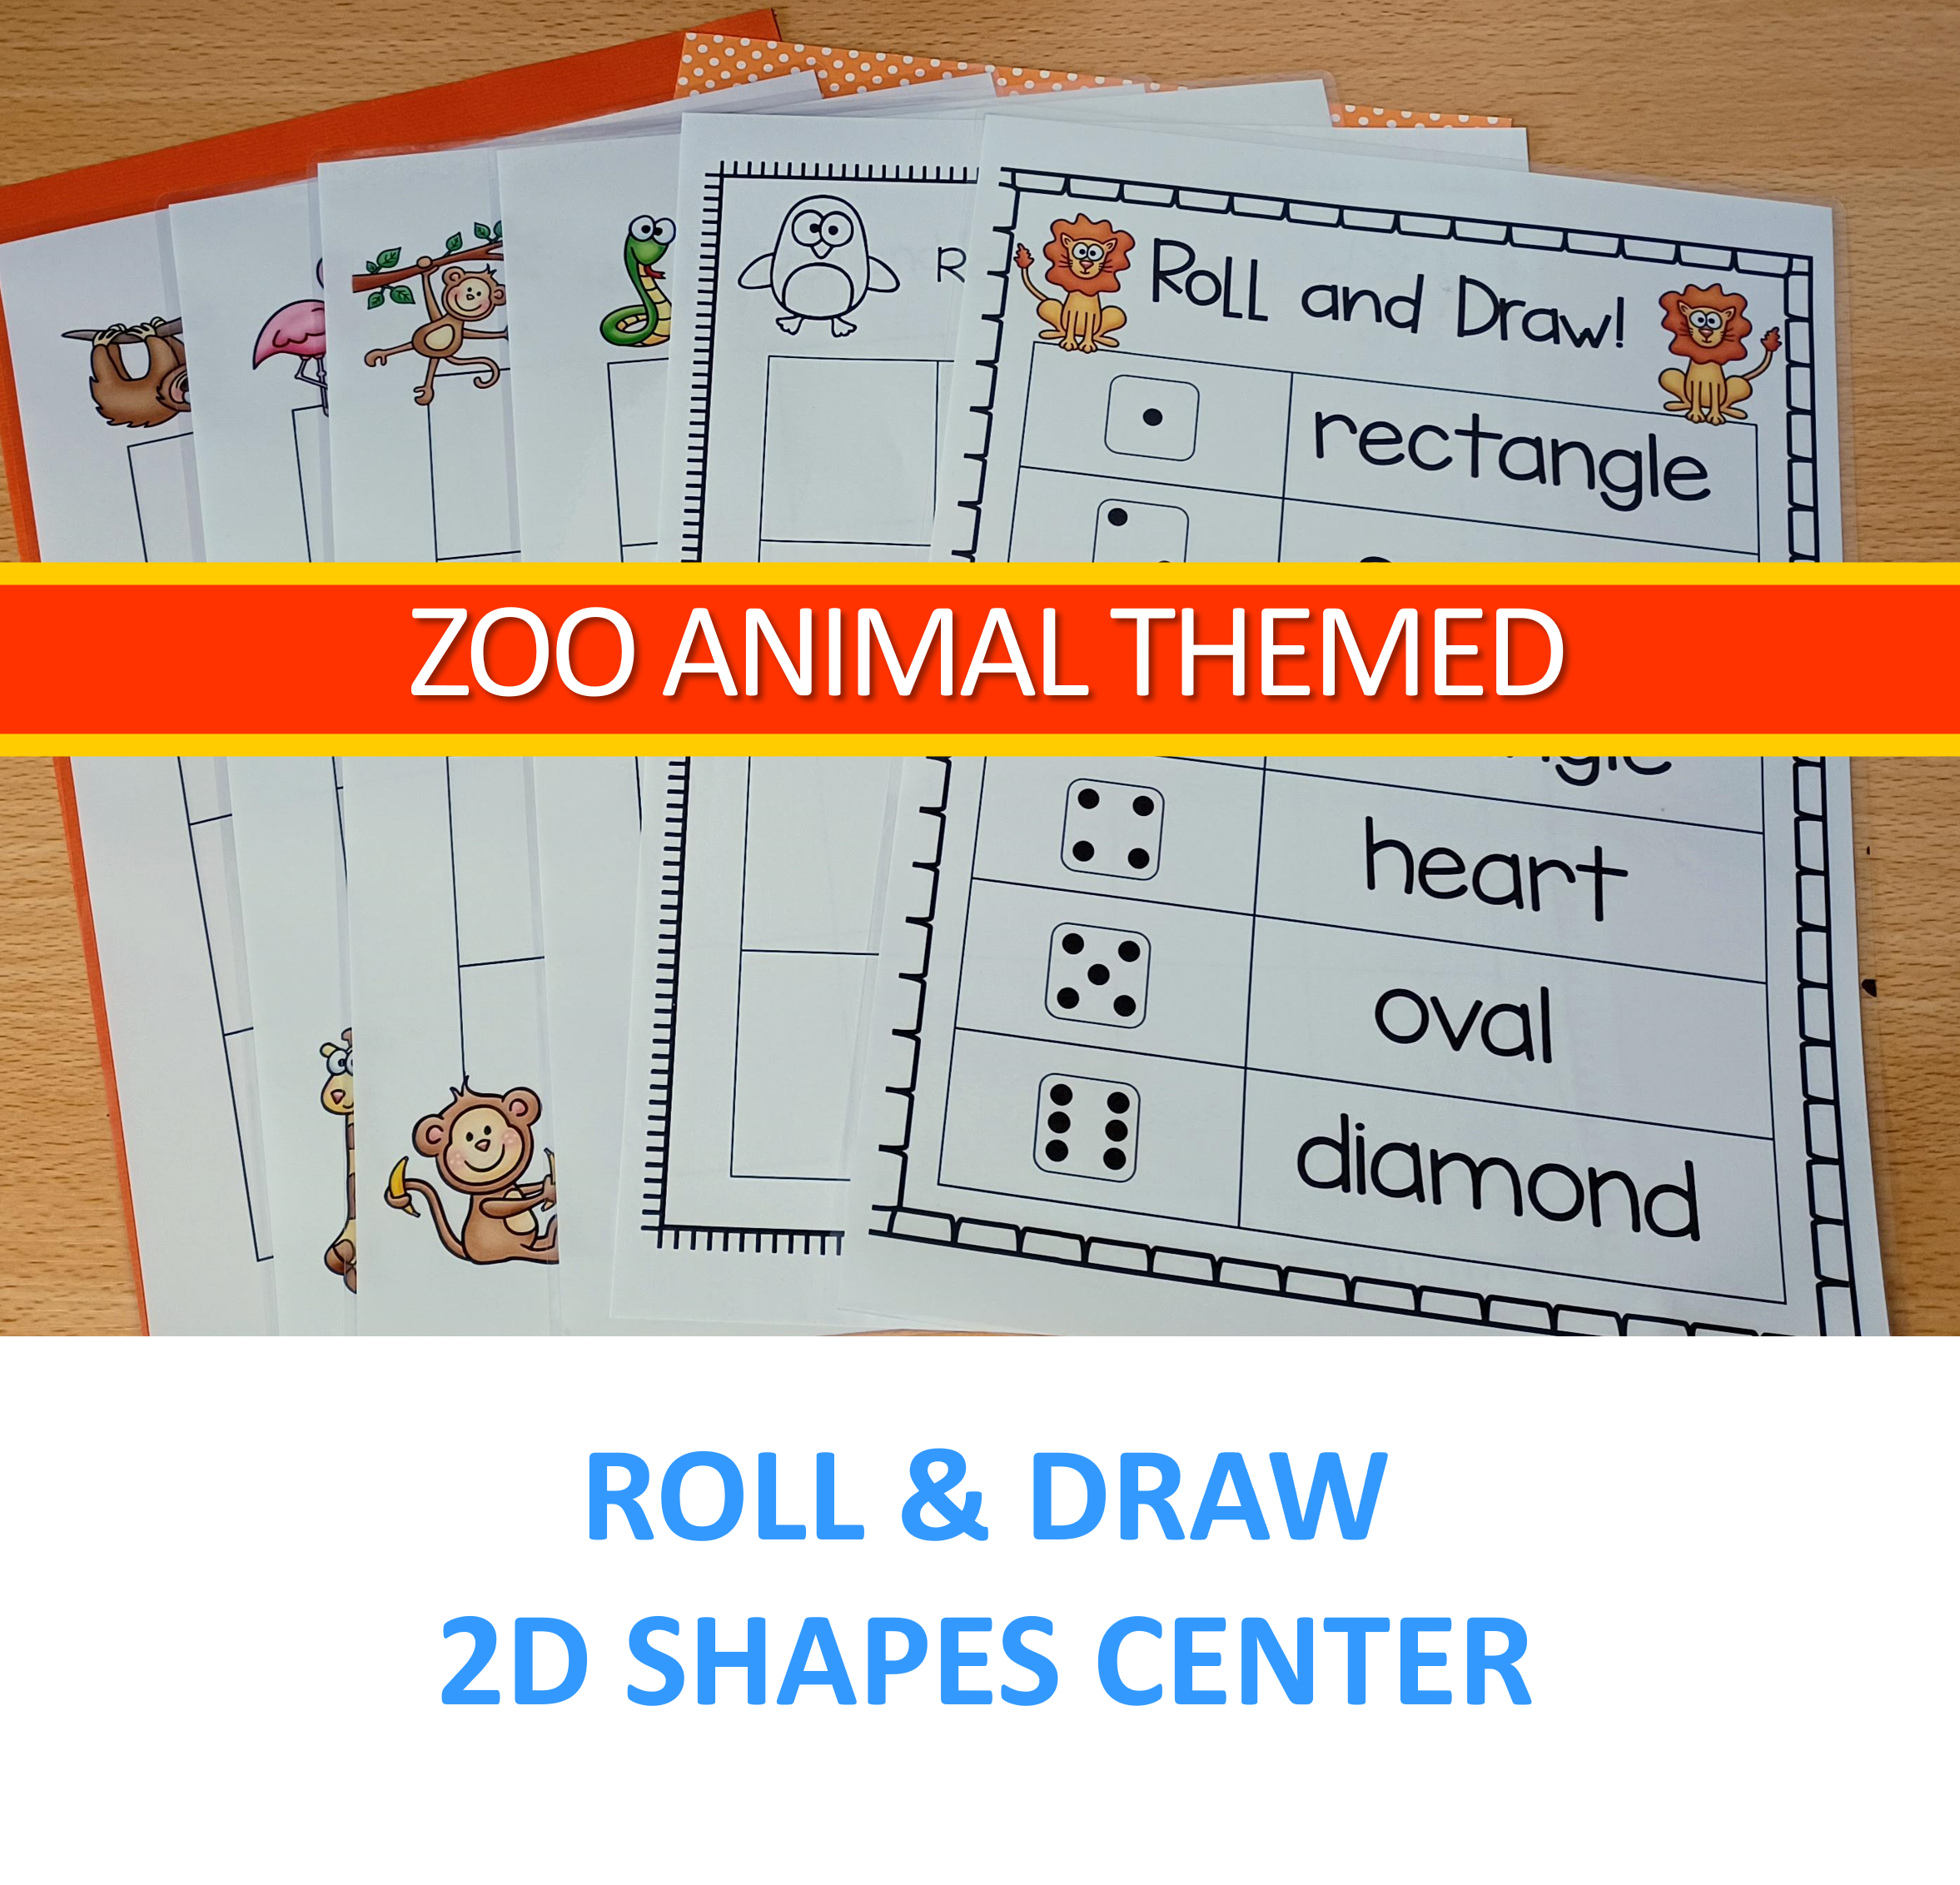 Zoo animals themed activiities